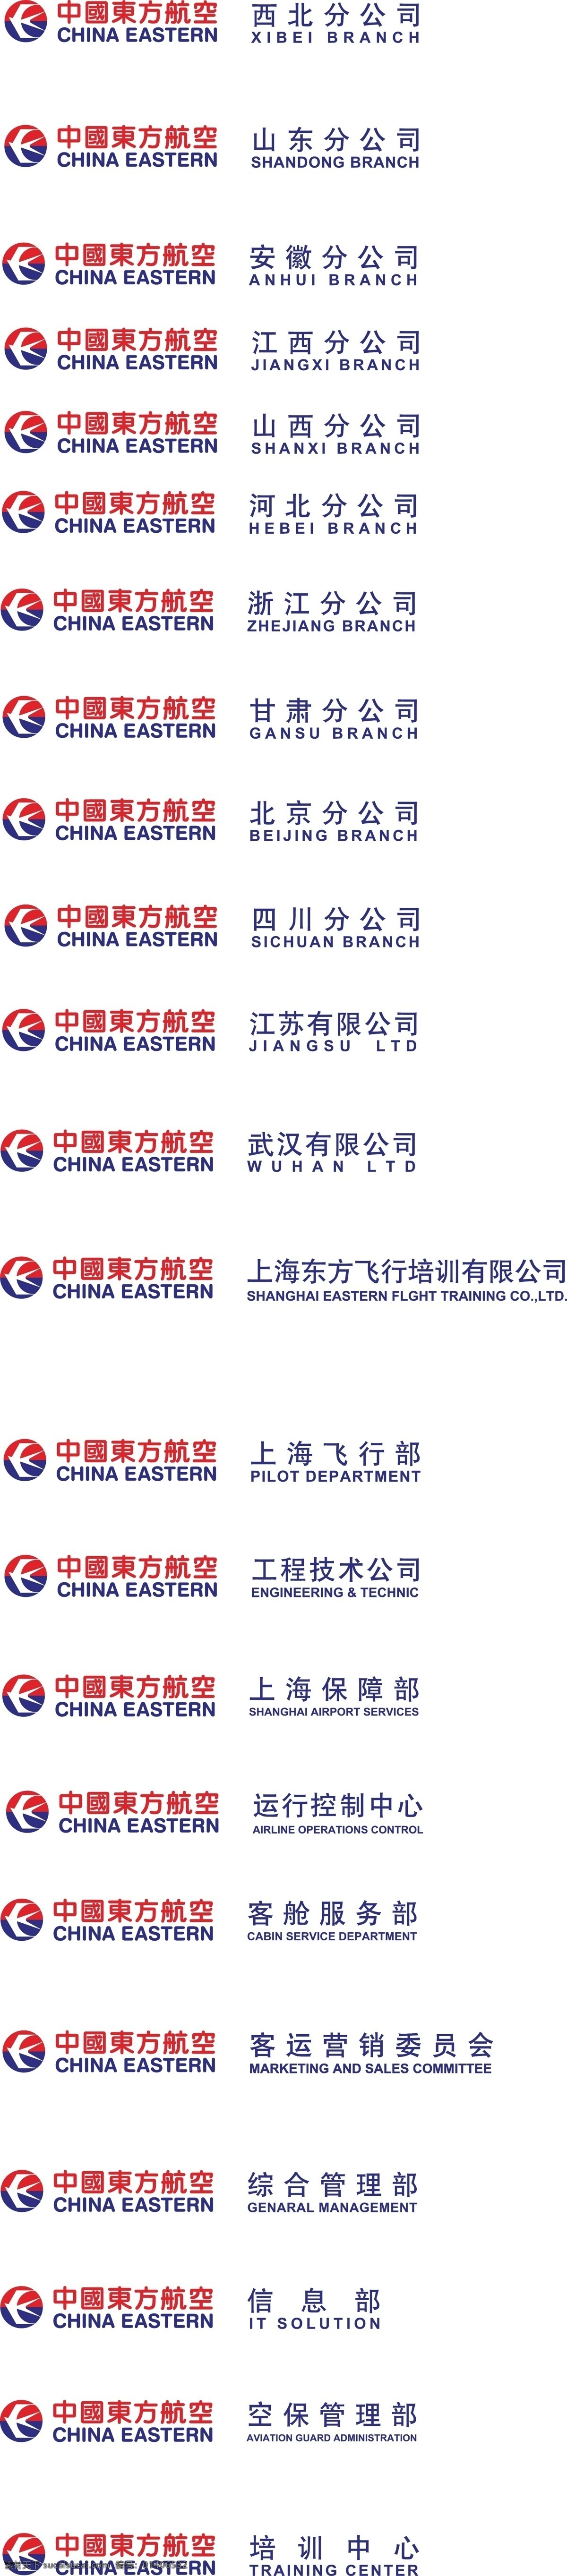 中国东方航空 logo 东航 企业 标志 标识标志图标 矢量